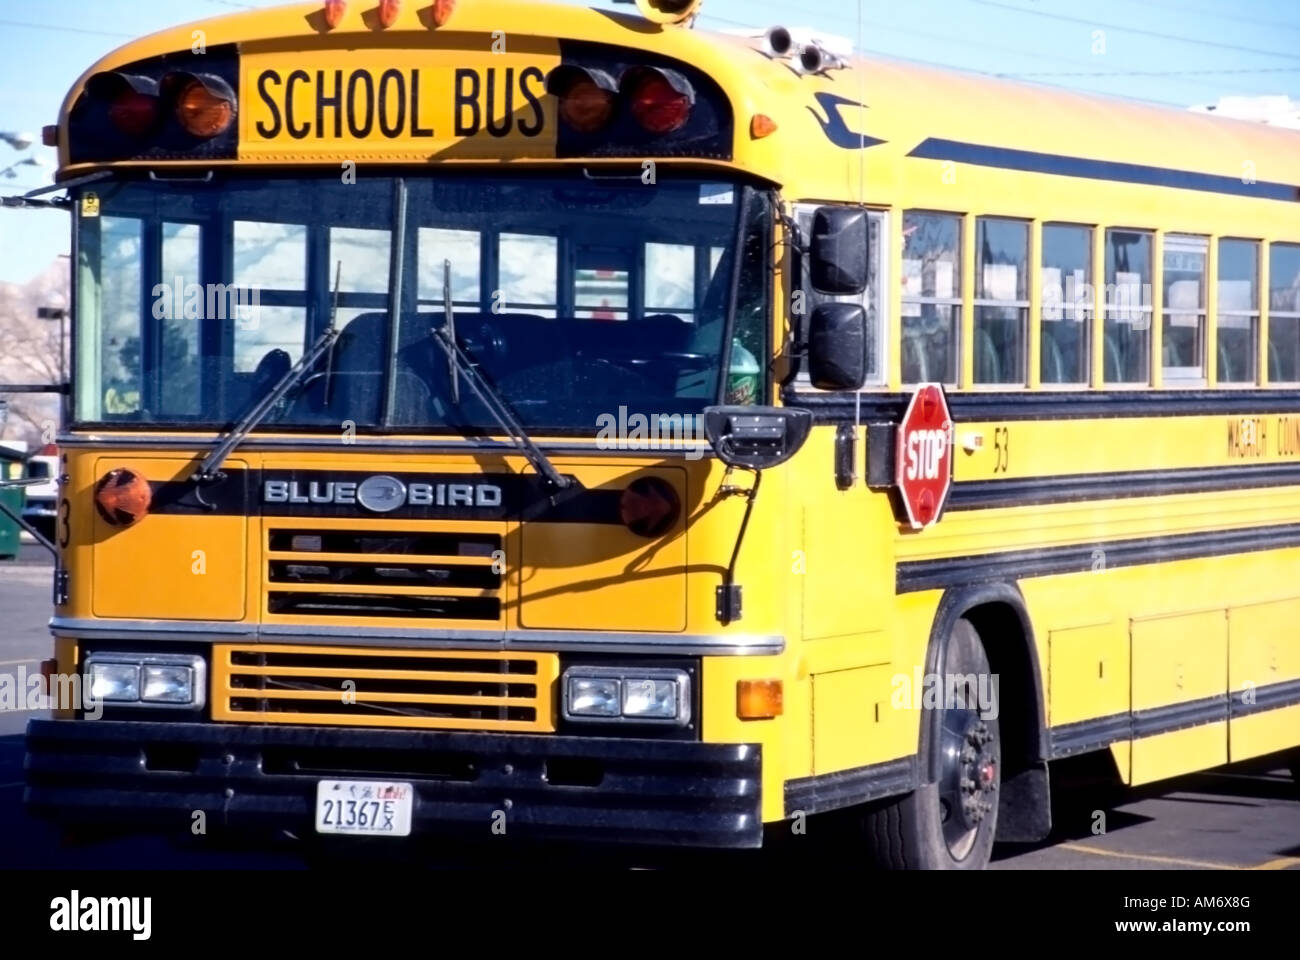 Una immagine di un colore giallo brillante, vuoto scuola bus. Potrebbe illustrare i concetti di scuola, istruzione, sicurezza dei bambini, bambini, futuro, ecc. Foto Stock